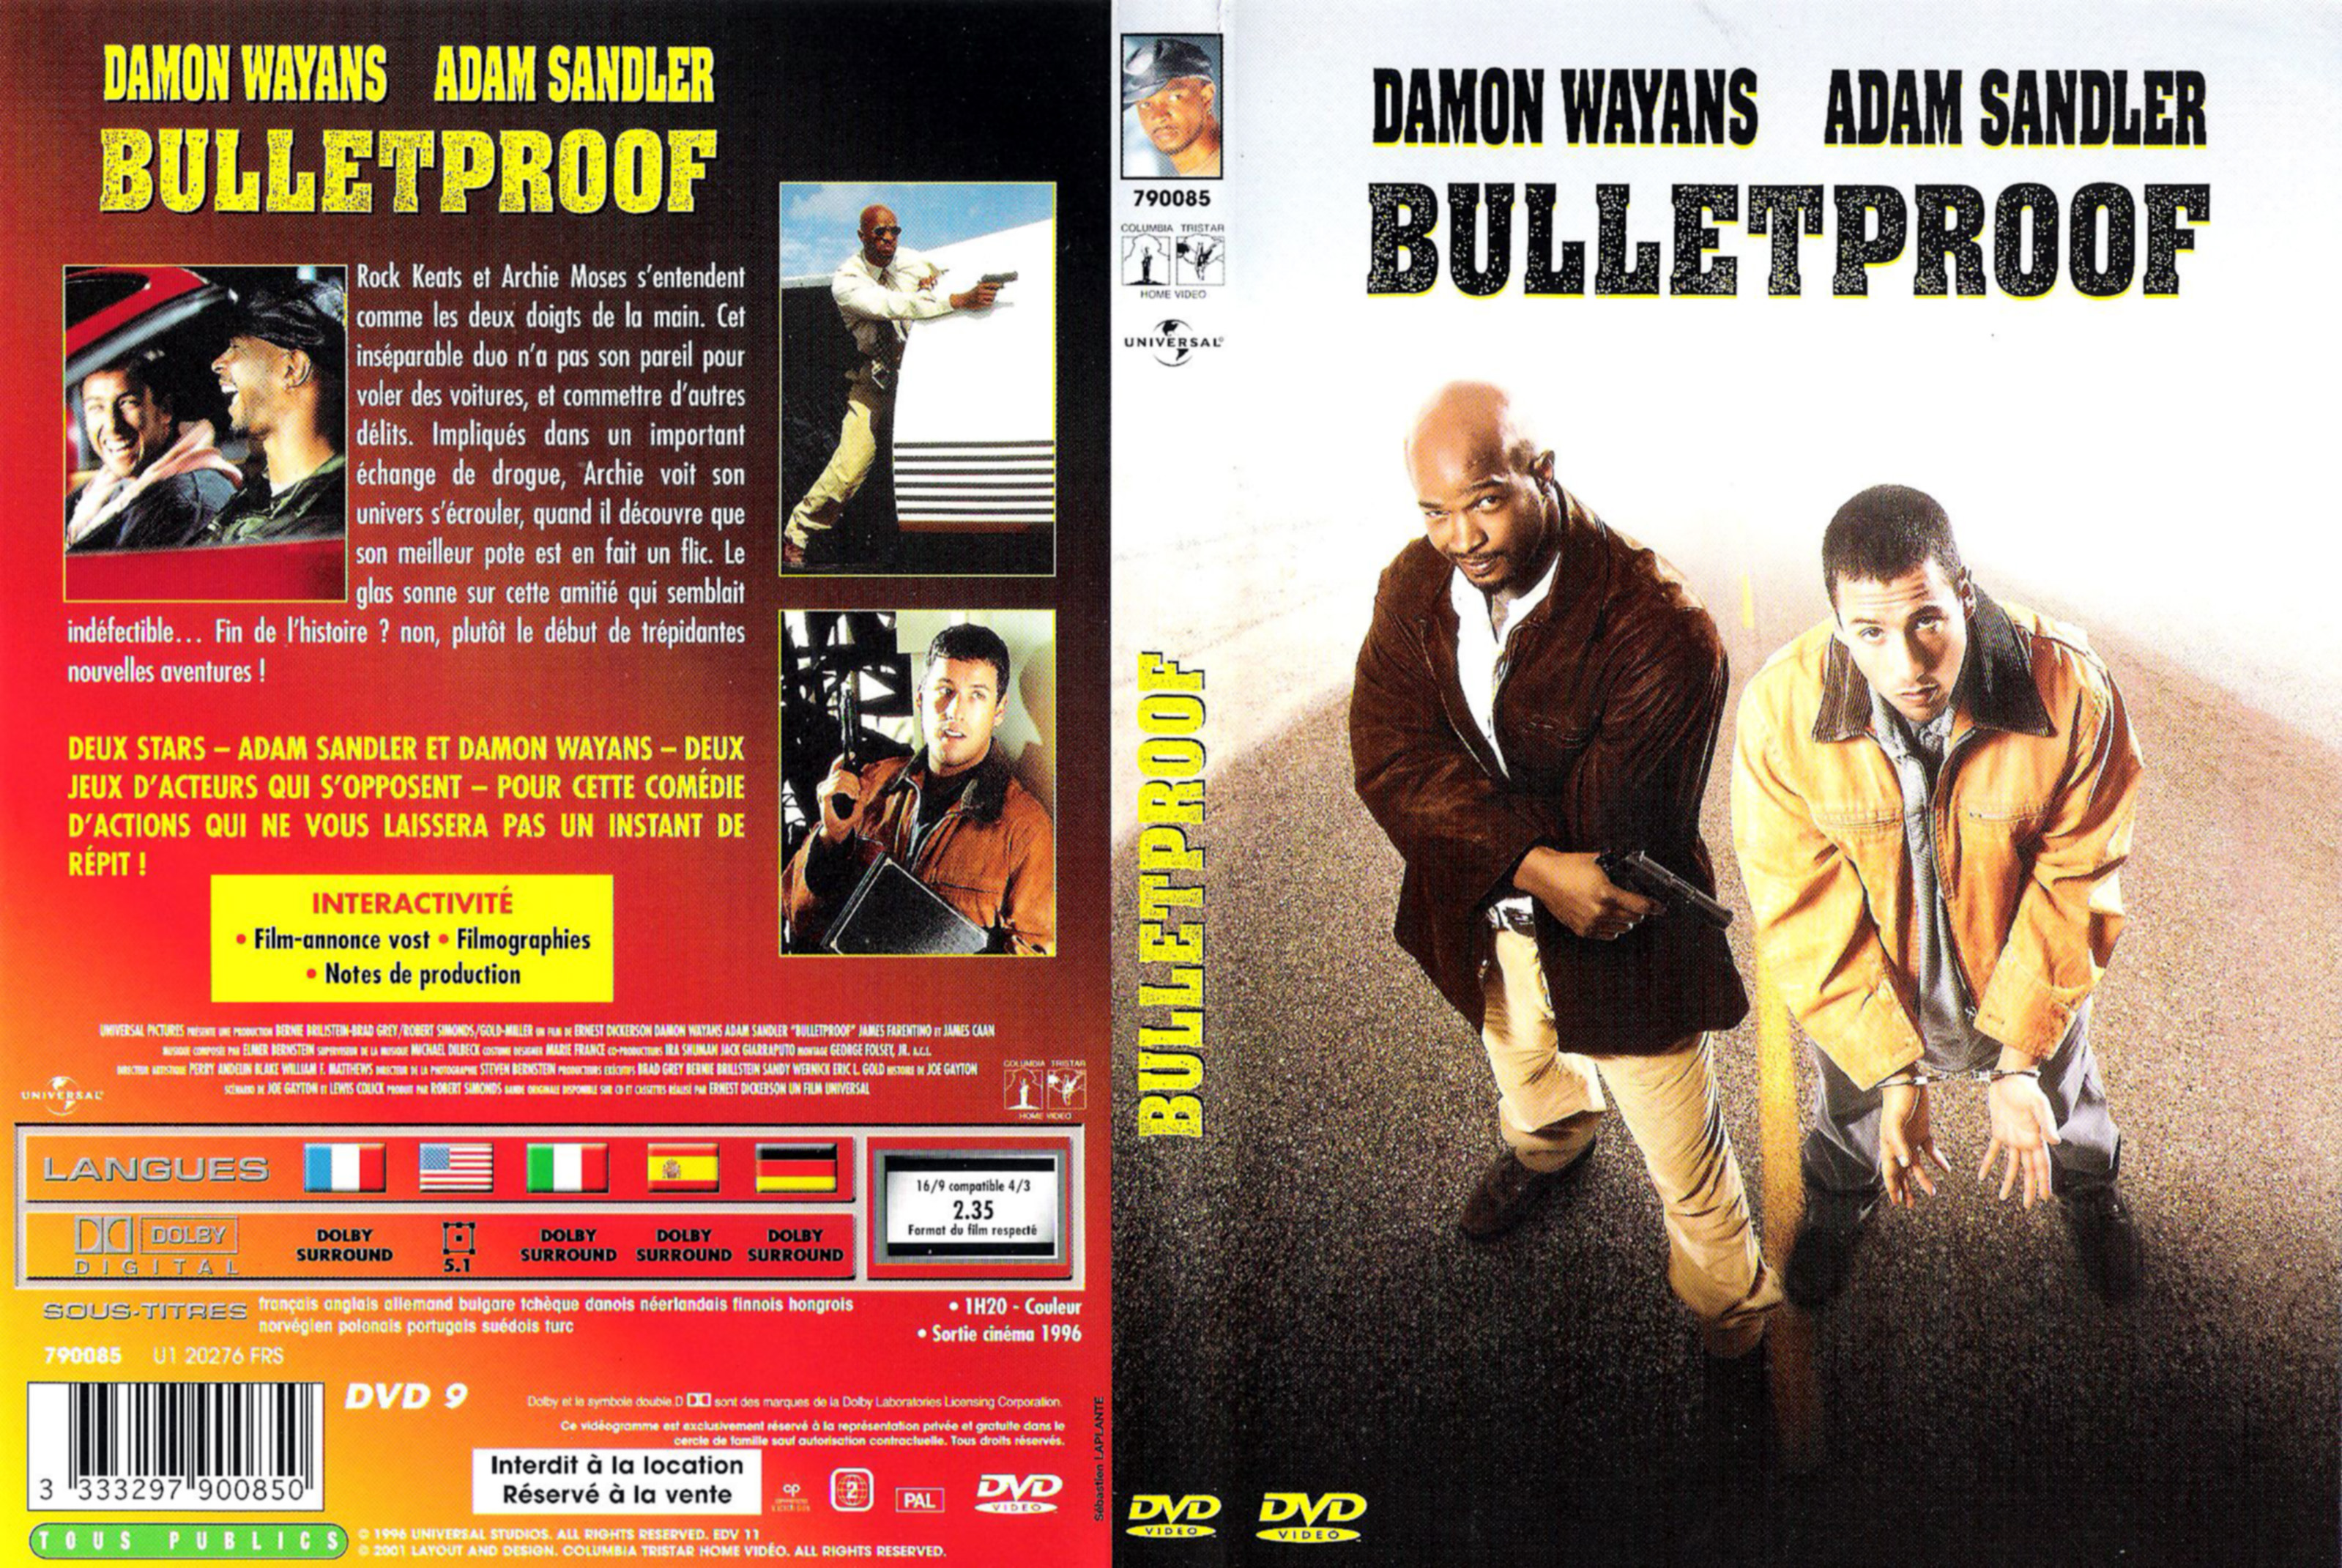 Jaquette DVD Bulletproof v3